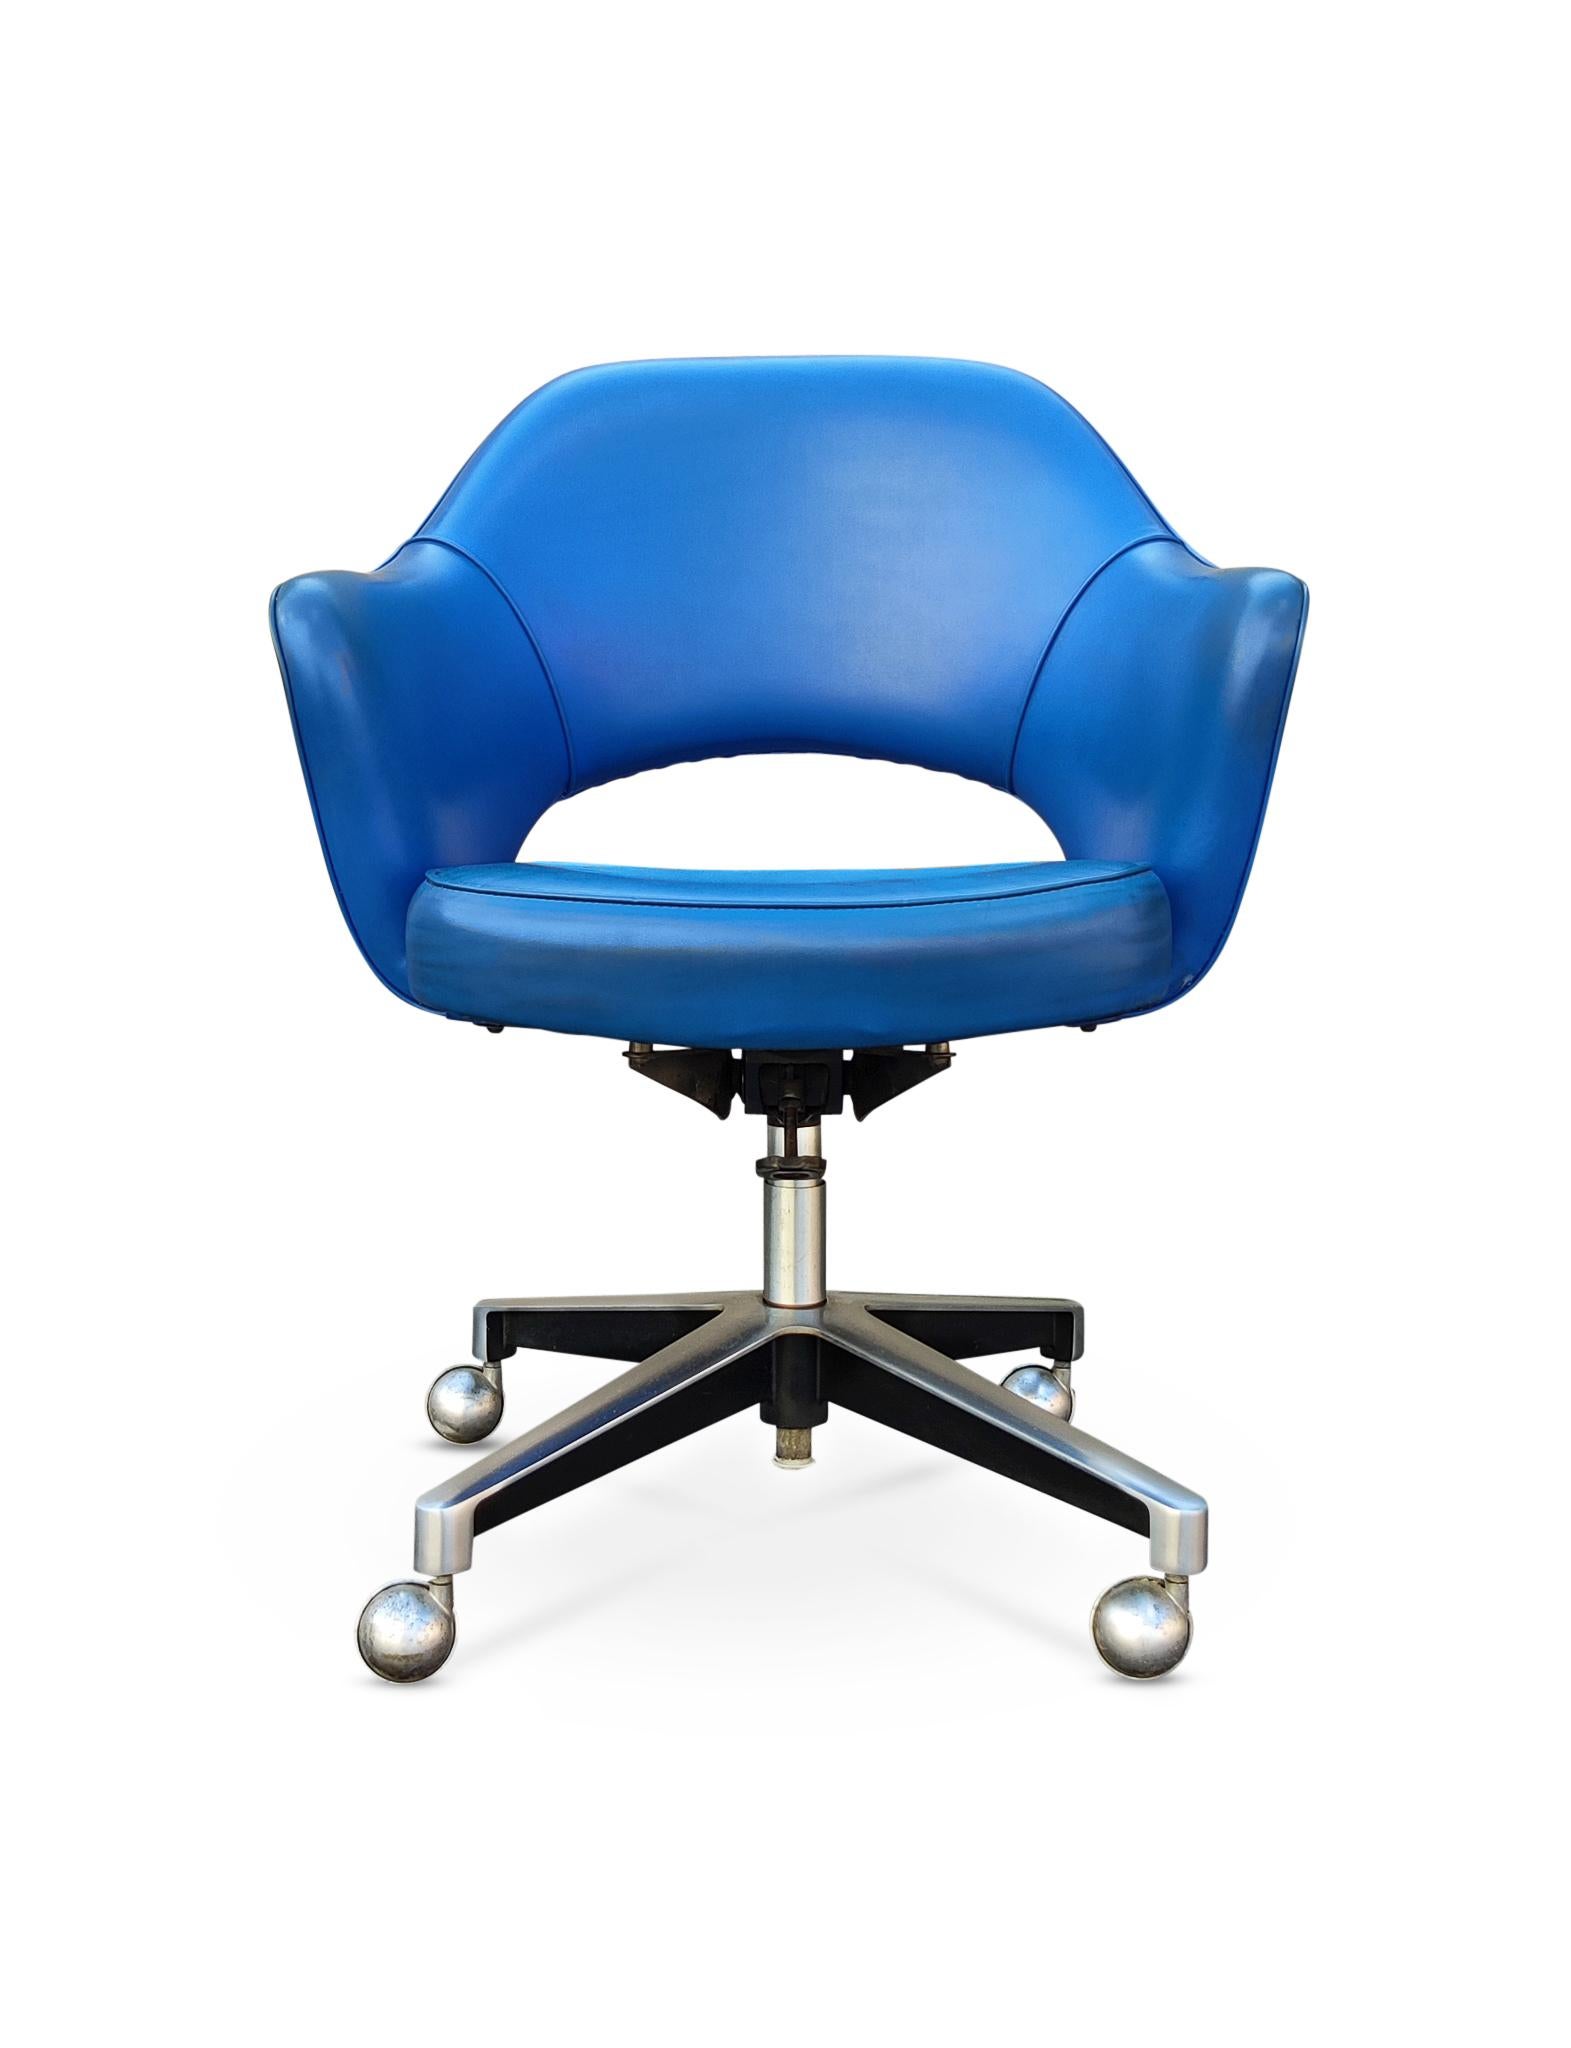 Bitte beachten Sie, ich habe ein passendes Paar von Sesseln, siehe letztes Bild. 

Chefsessel, 1950 von Eero Saarinen für Knoll Associates entworfen. Dieses Exemplar stammt aus den frühen 50er Jahren und hat den frühesten Kippmechanismus. Alles